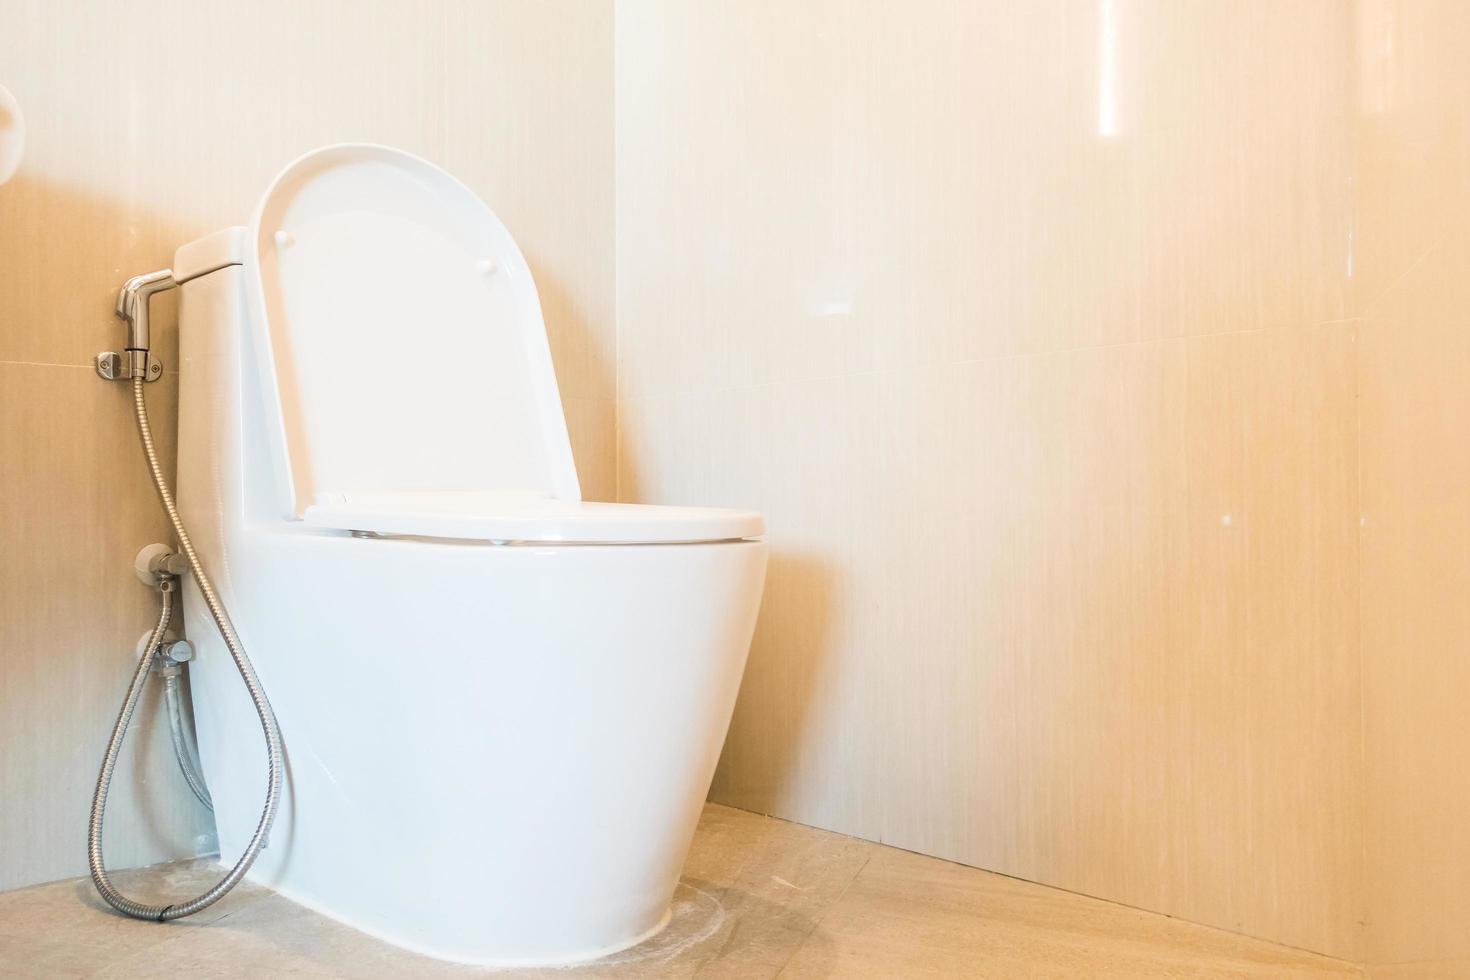 White toilet bowl seat photo